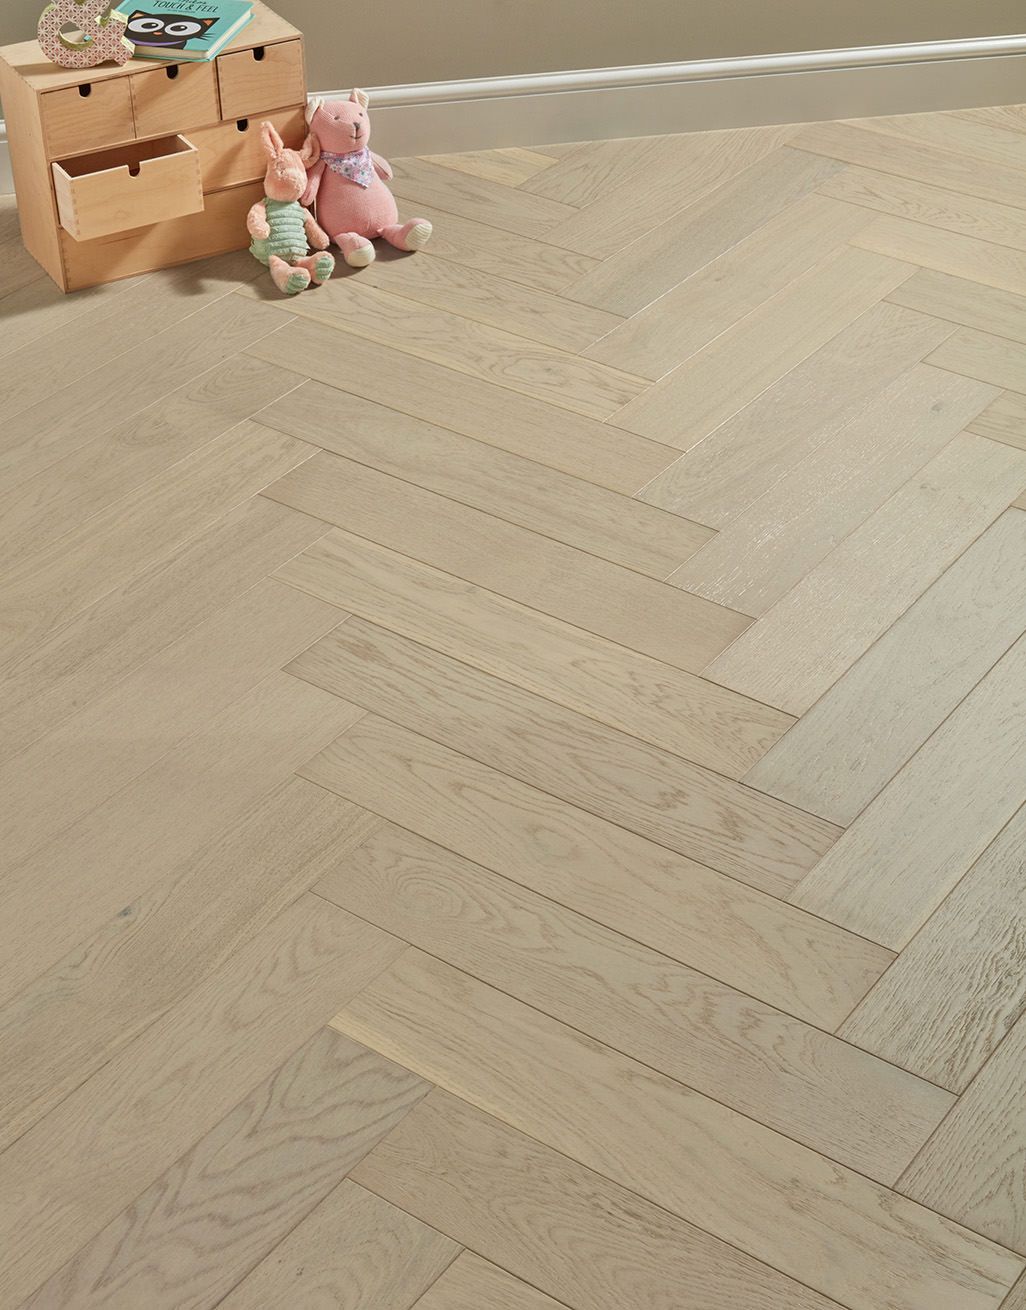 Marylebone Chantilly Lace Oak Brushed & Lacquered Engineered Wood Flooring 1